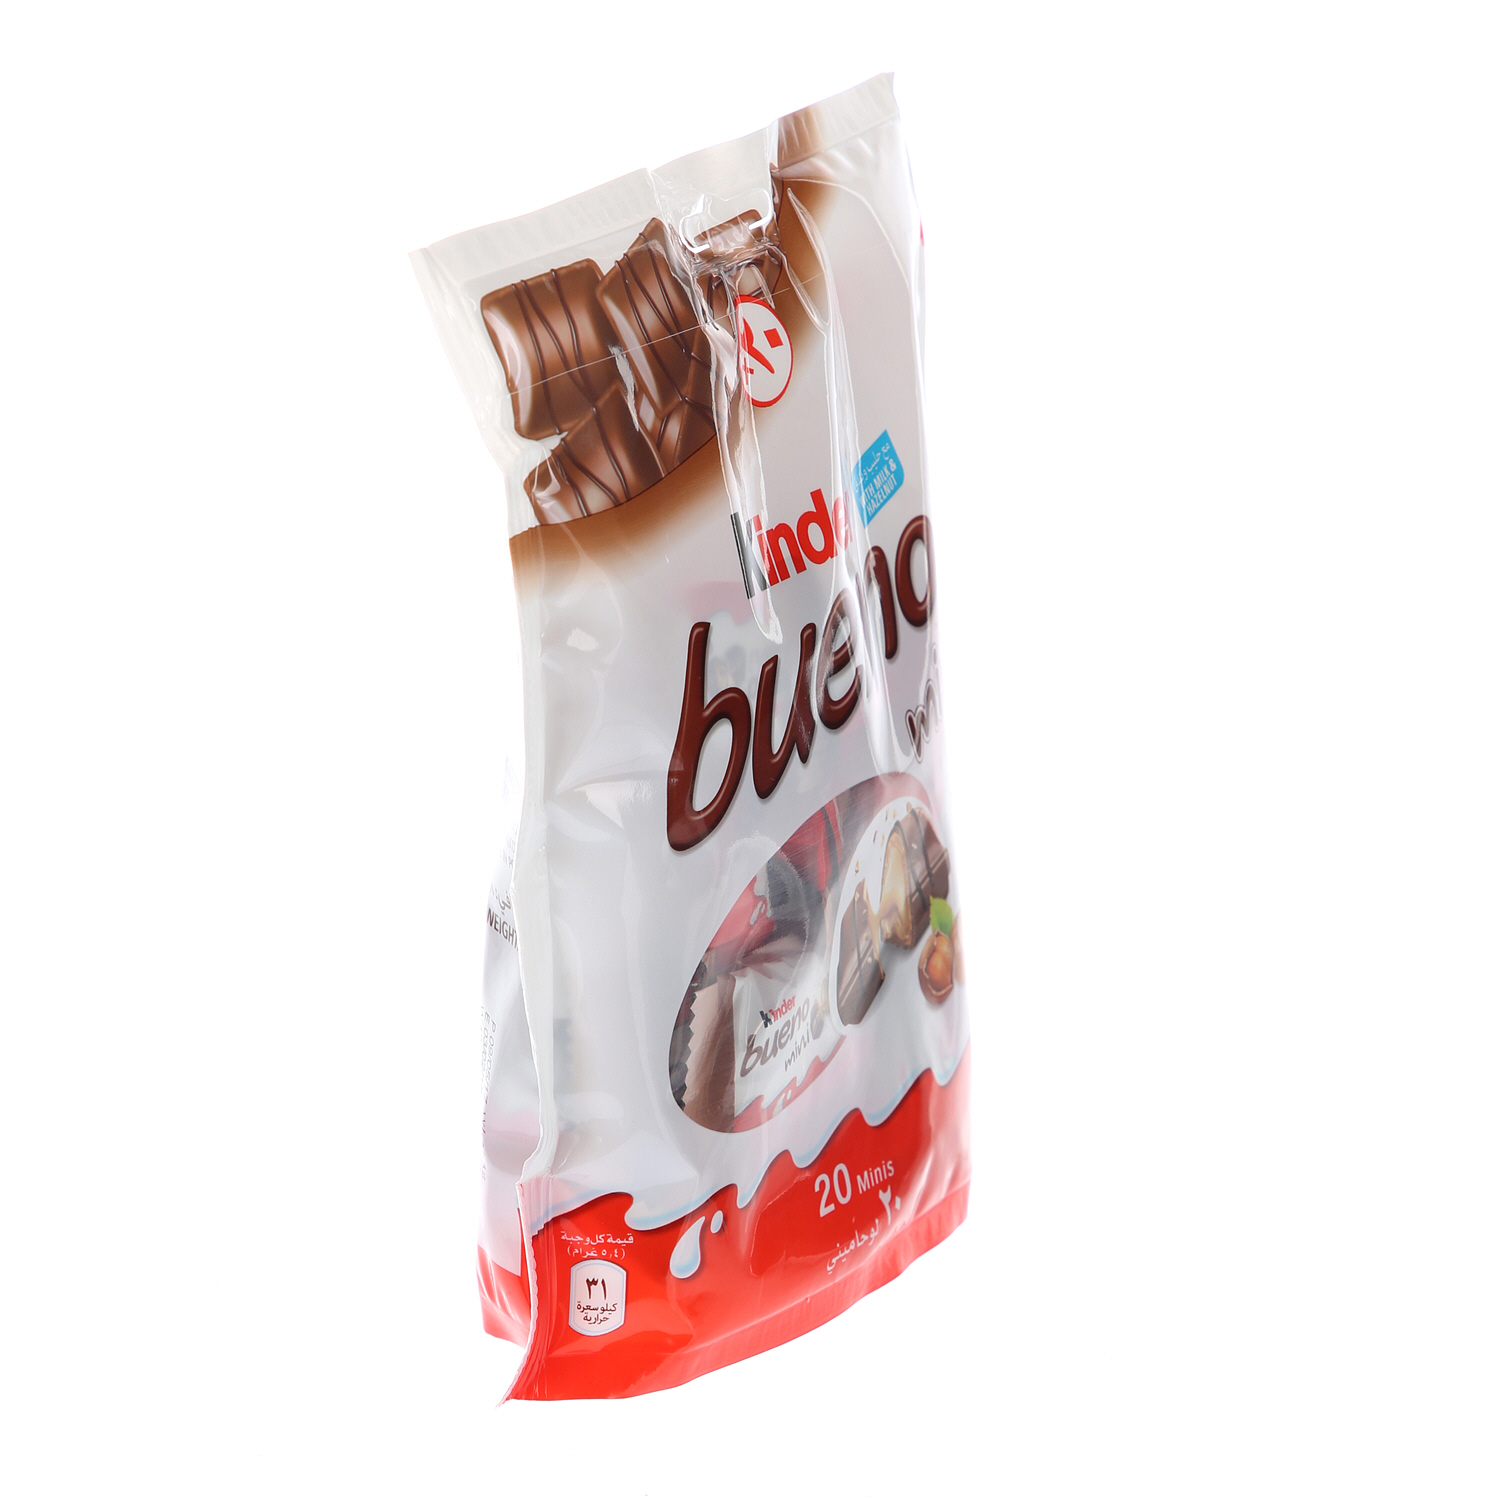 Kinder Bueno Mini Candy & Chocolate 108gm